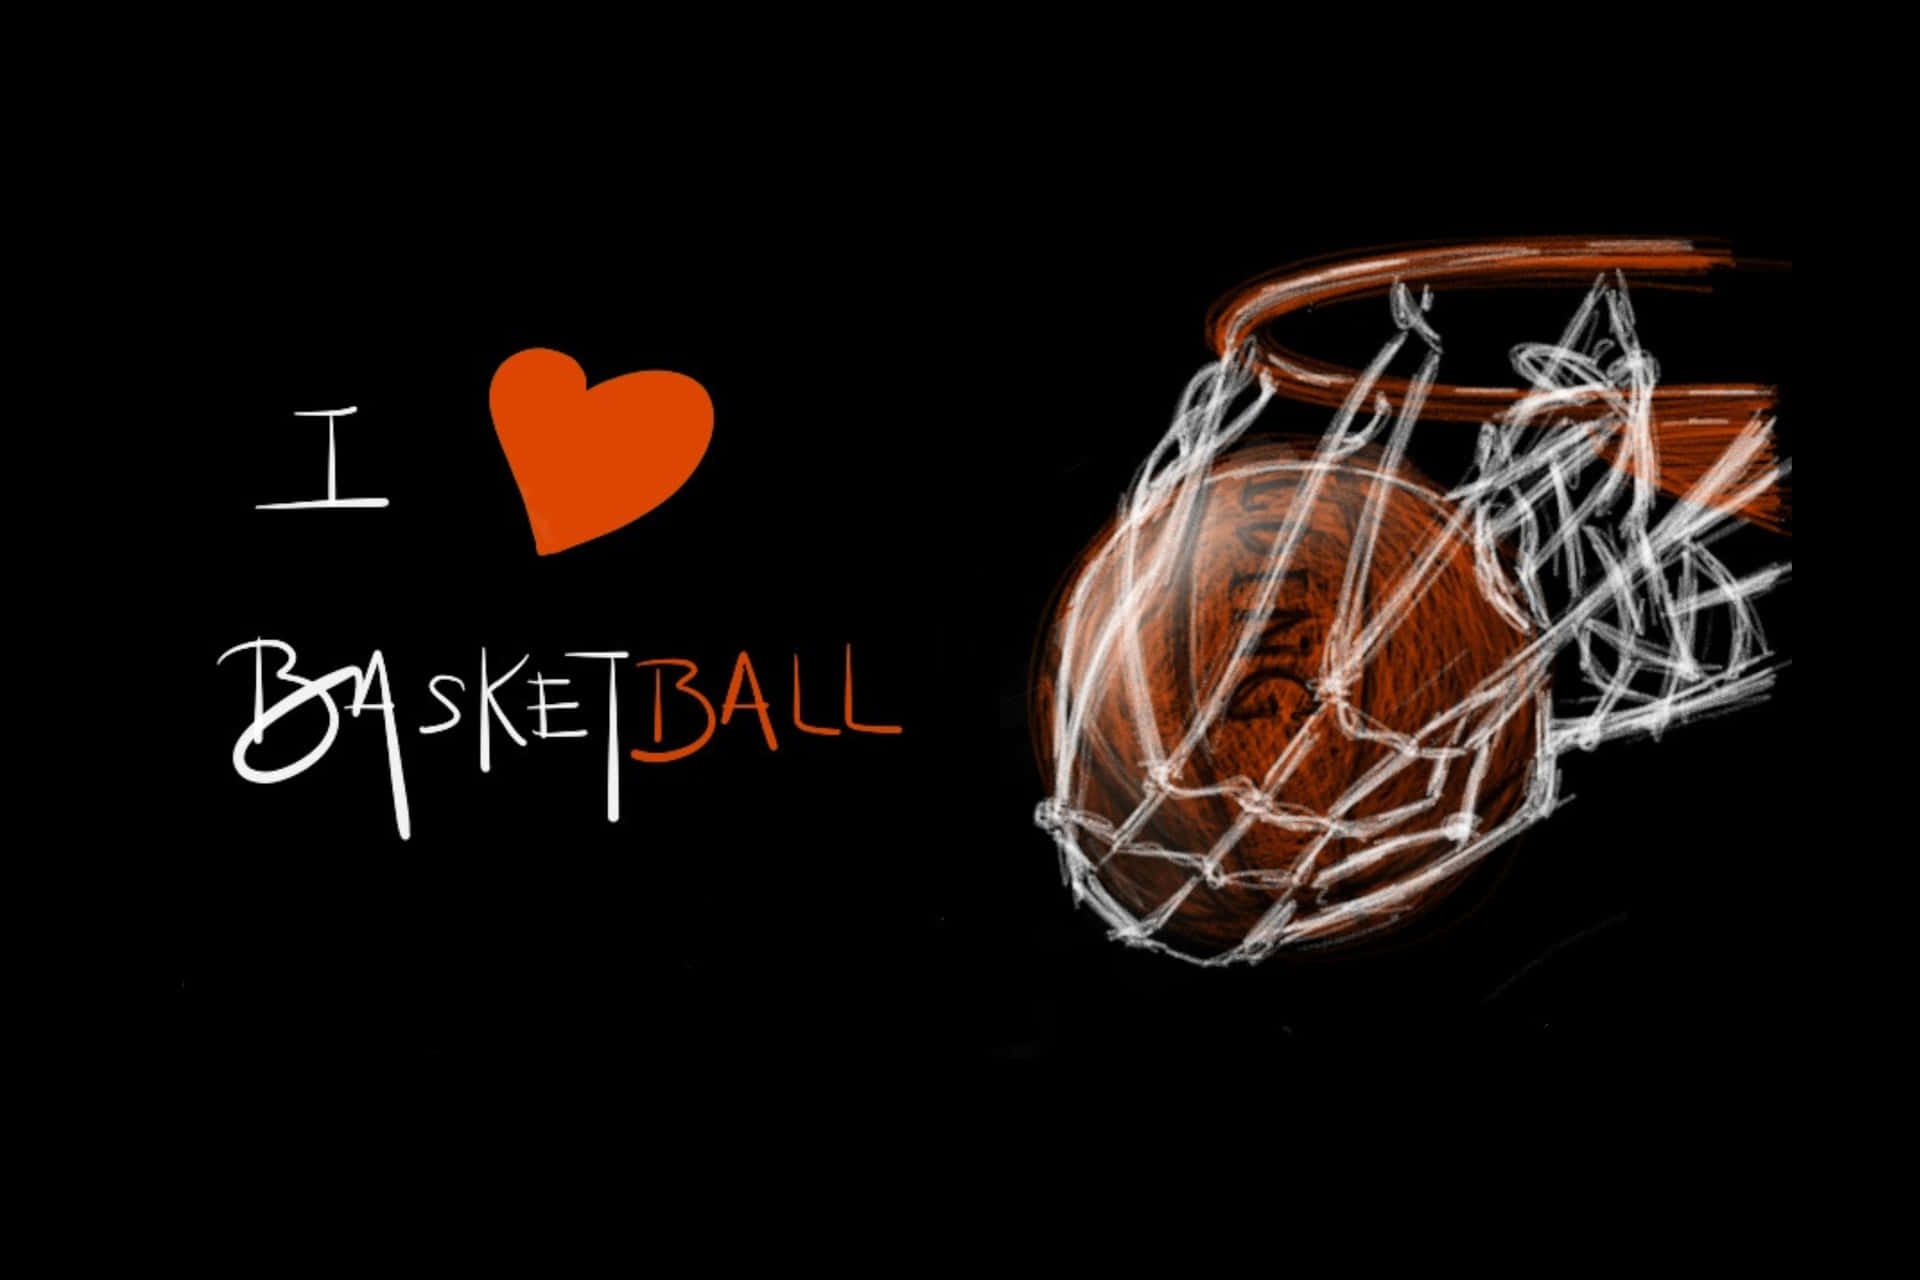 Passionfor Basketball Artwork Wallpaper